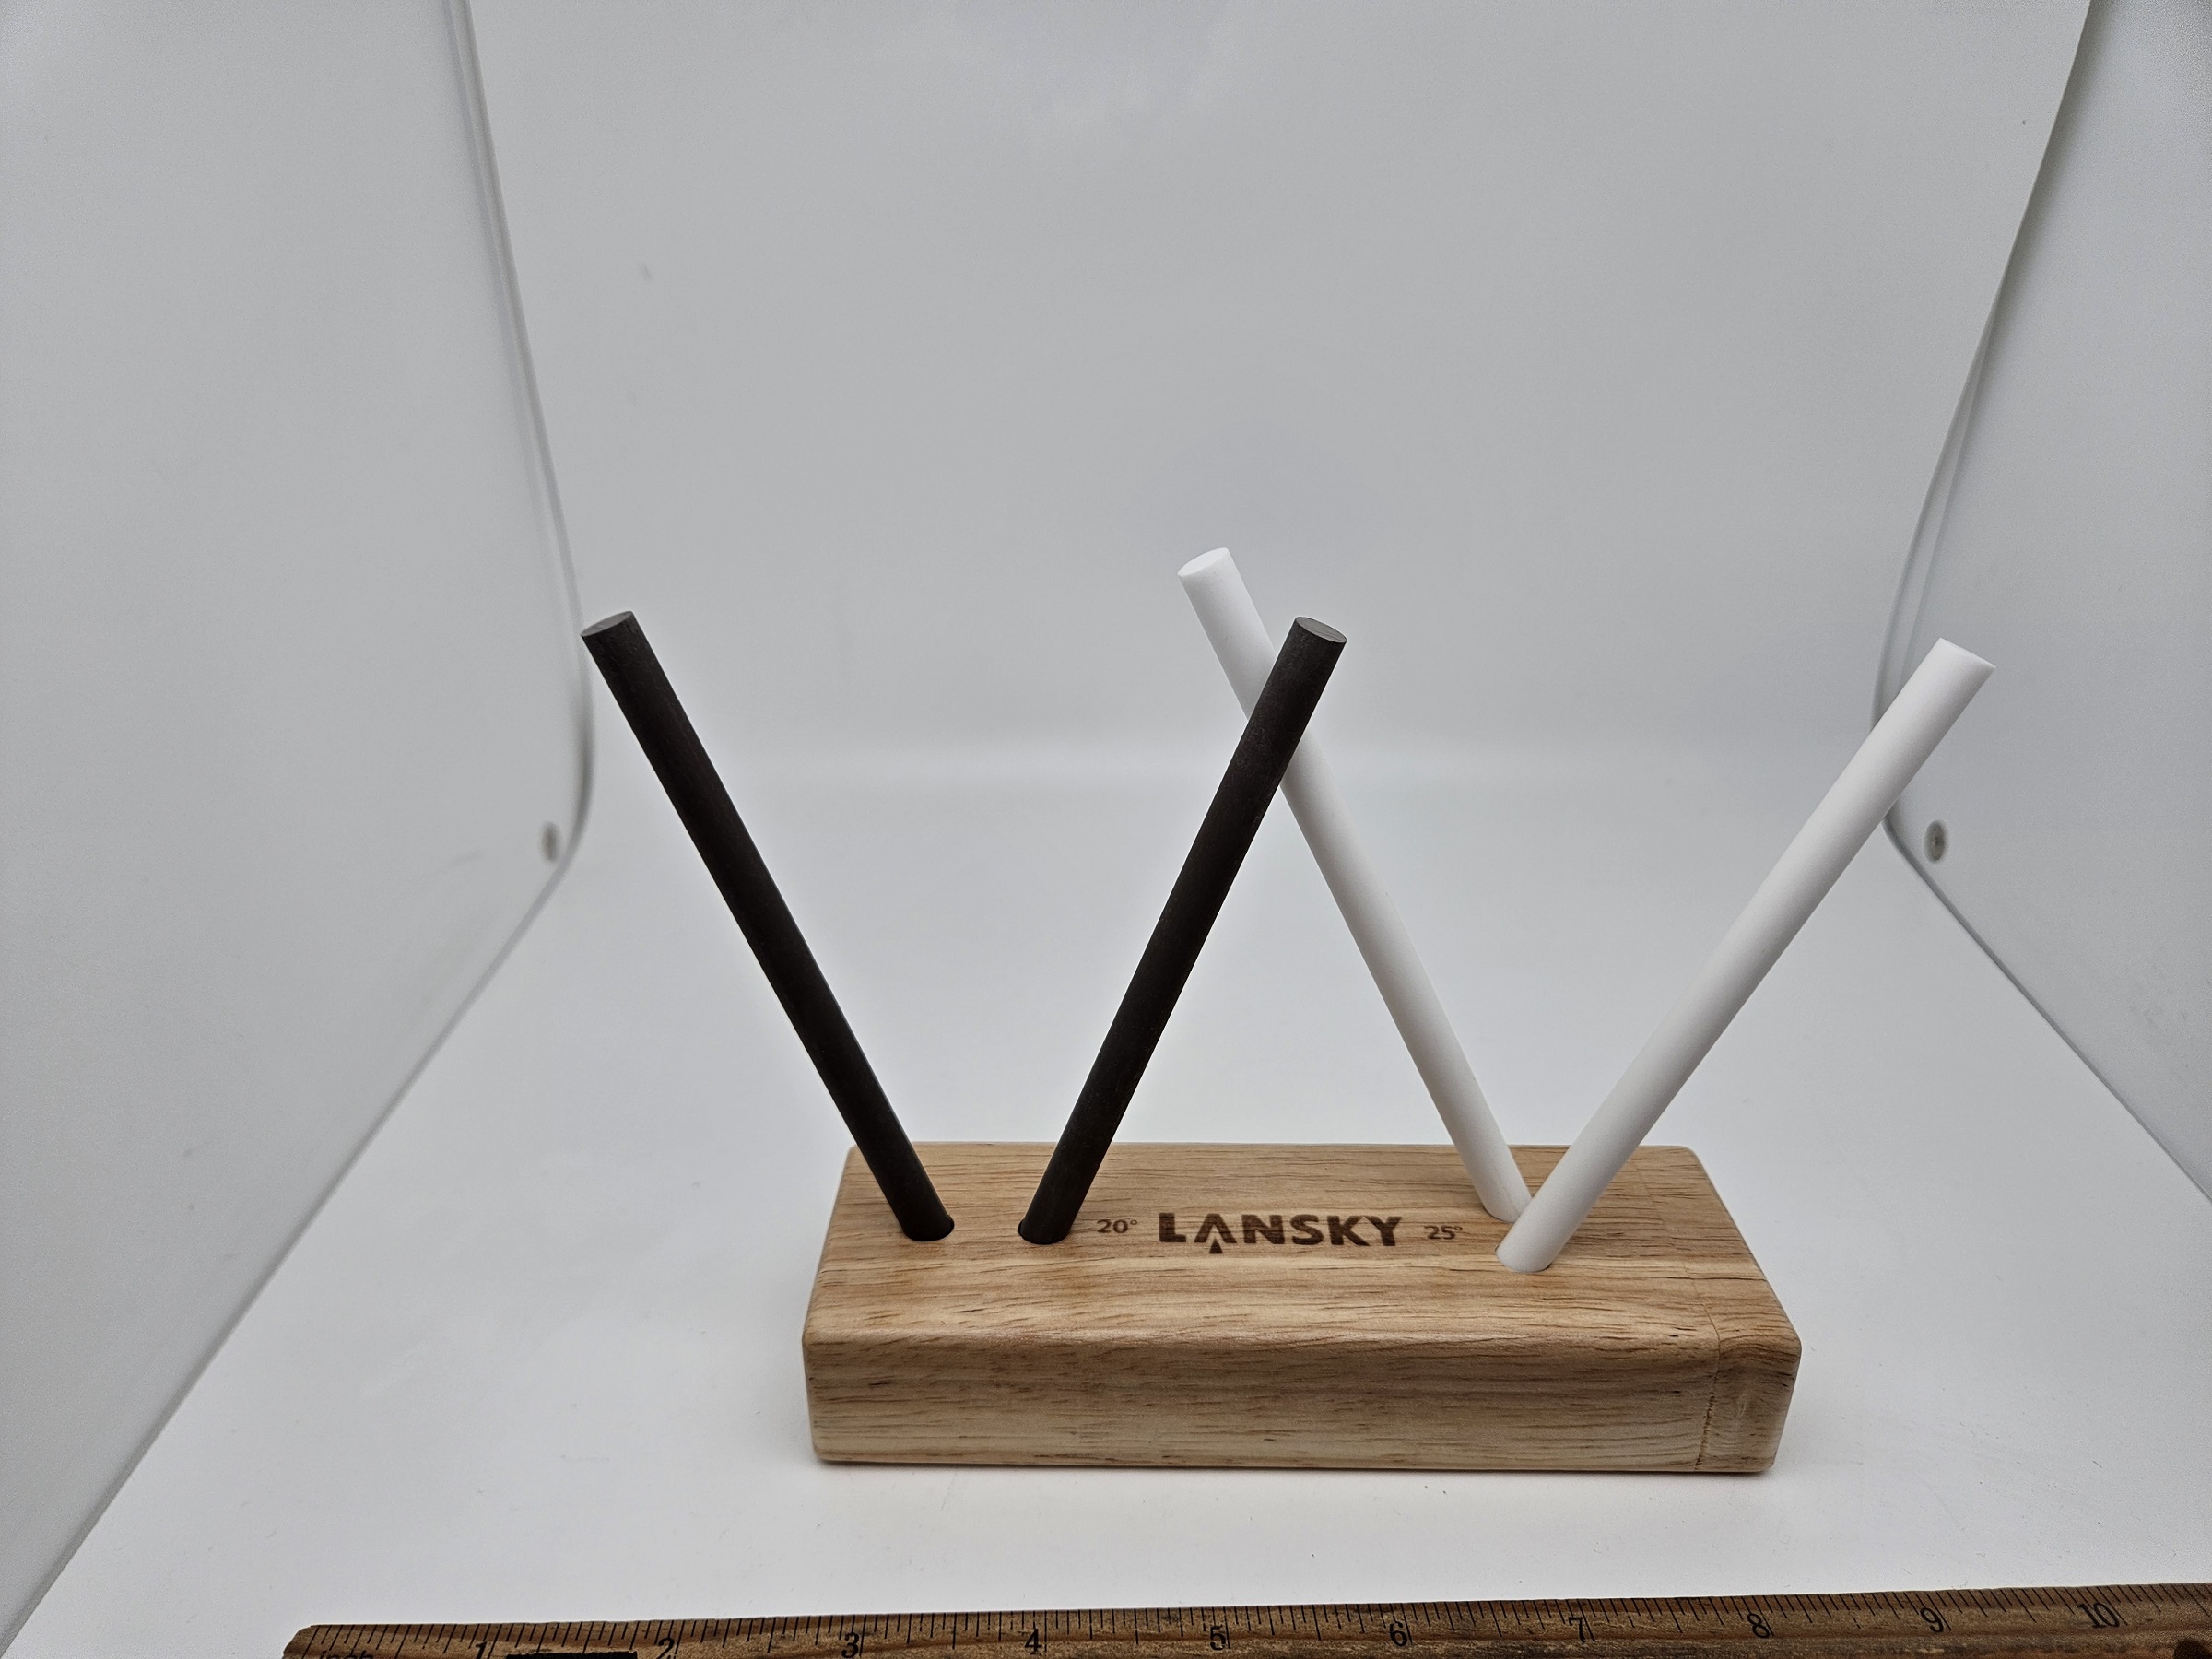 Lansky Standard Knife Sharpening System: 3-Stone Ceramic Knife Sharpener  Kit with Honing Oil - LKC03